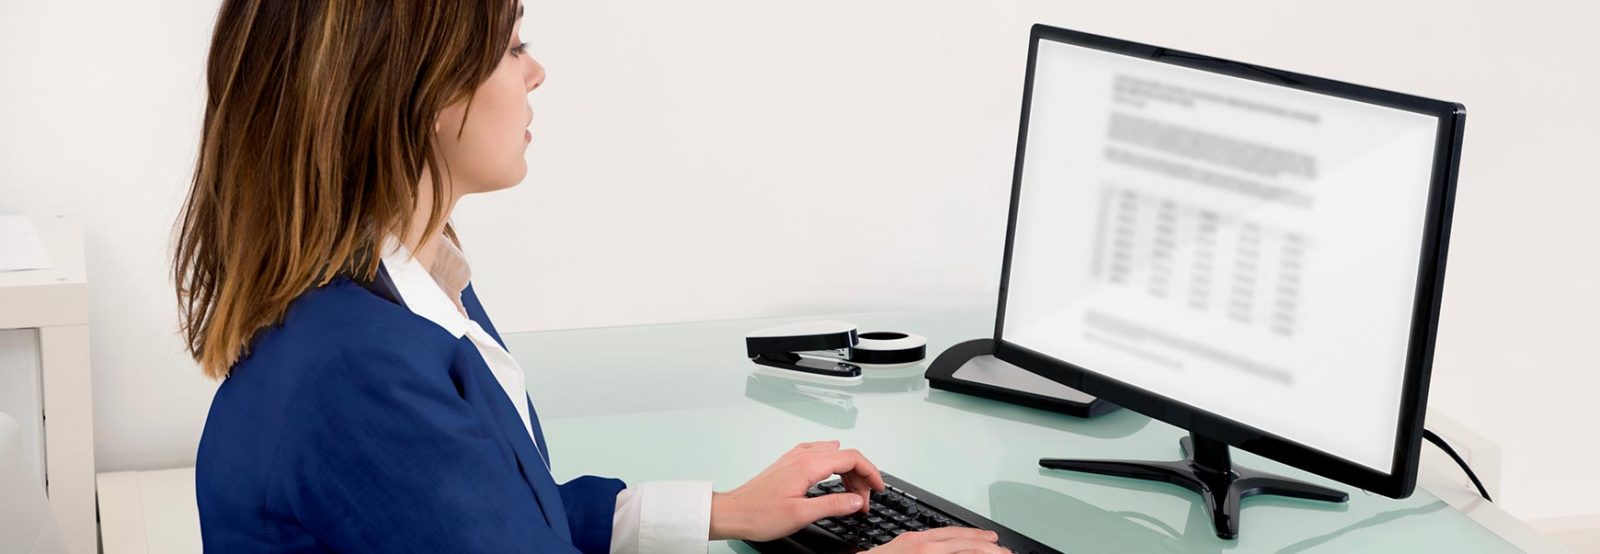 Das Bild zeigt eine Frau im Blazer am Schreibtisch vor dem Computer.